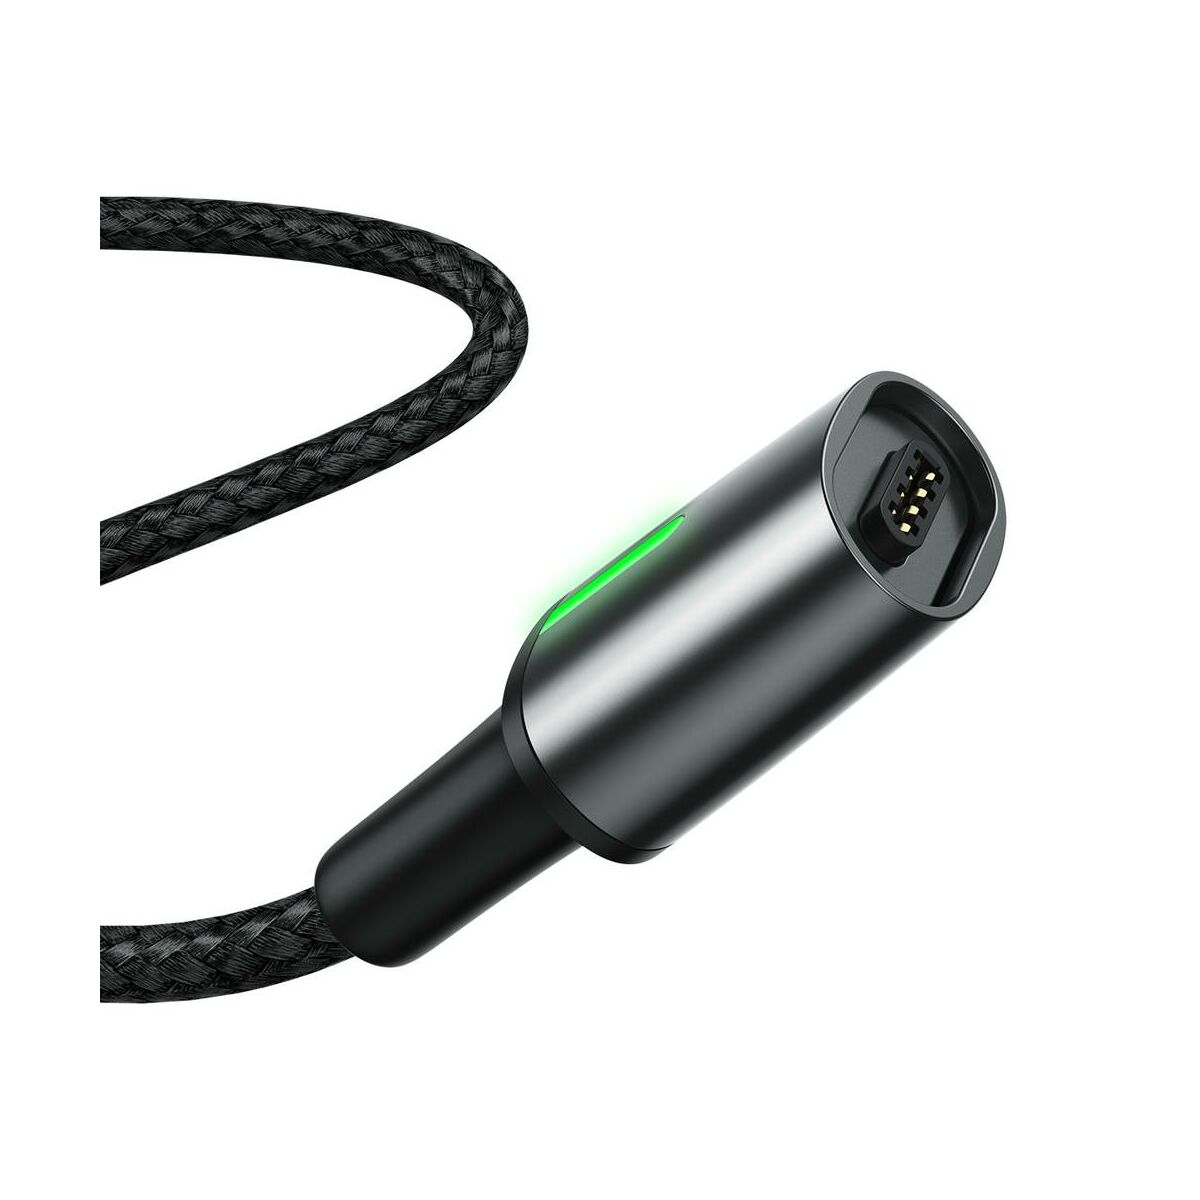 Baseus Mágneses kábel, Micro USB, Mágnessel csatlakozó töltő kábel, 2.4A 1m, fekete (CAMXC-A01)